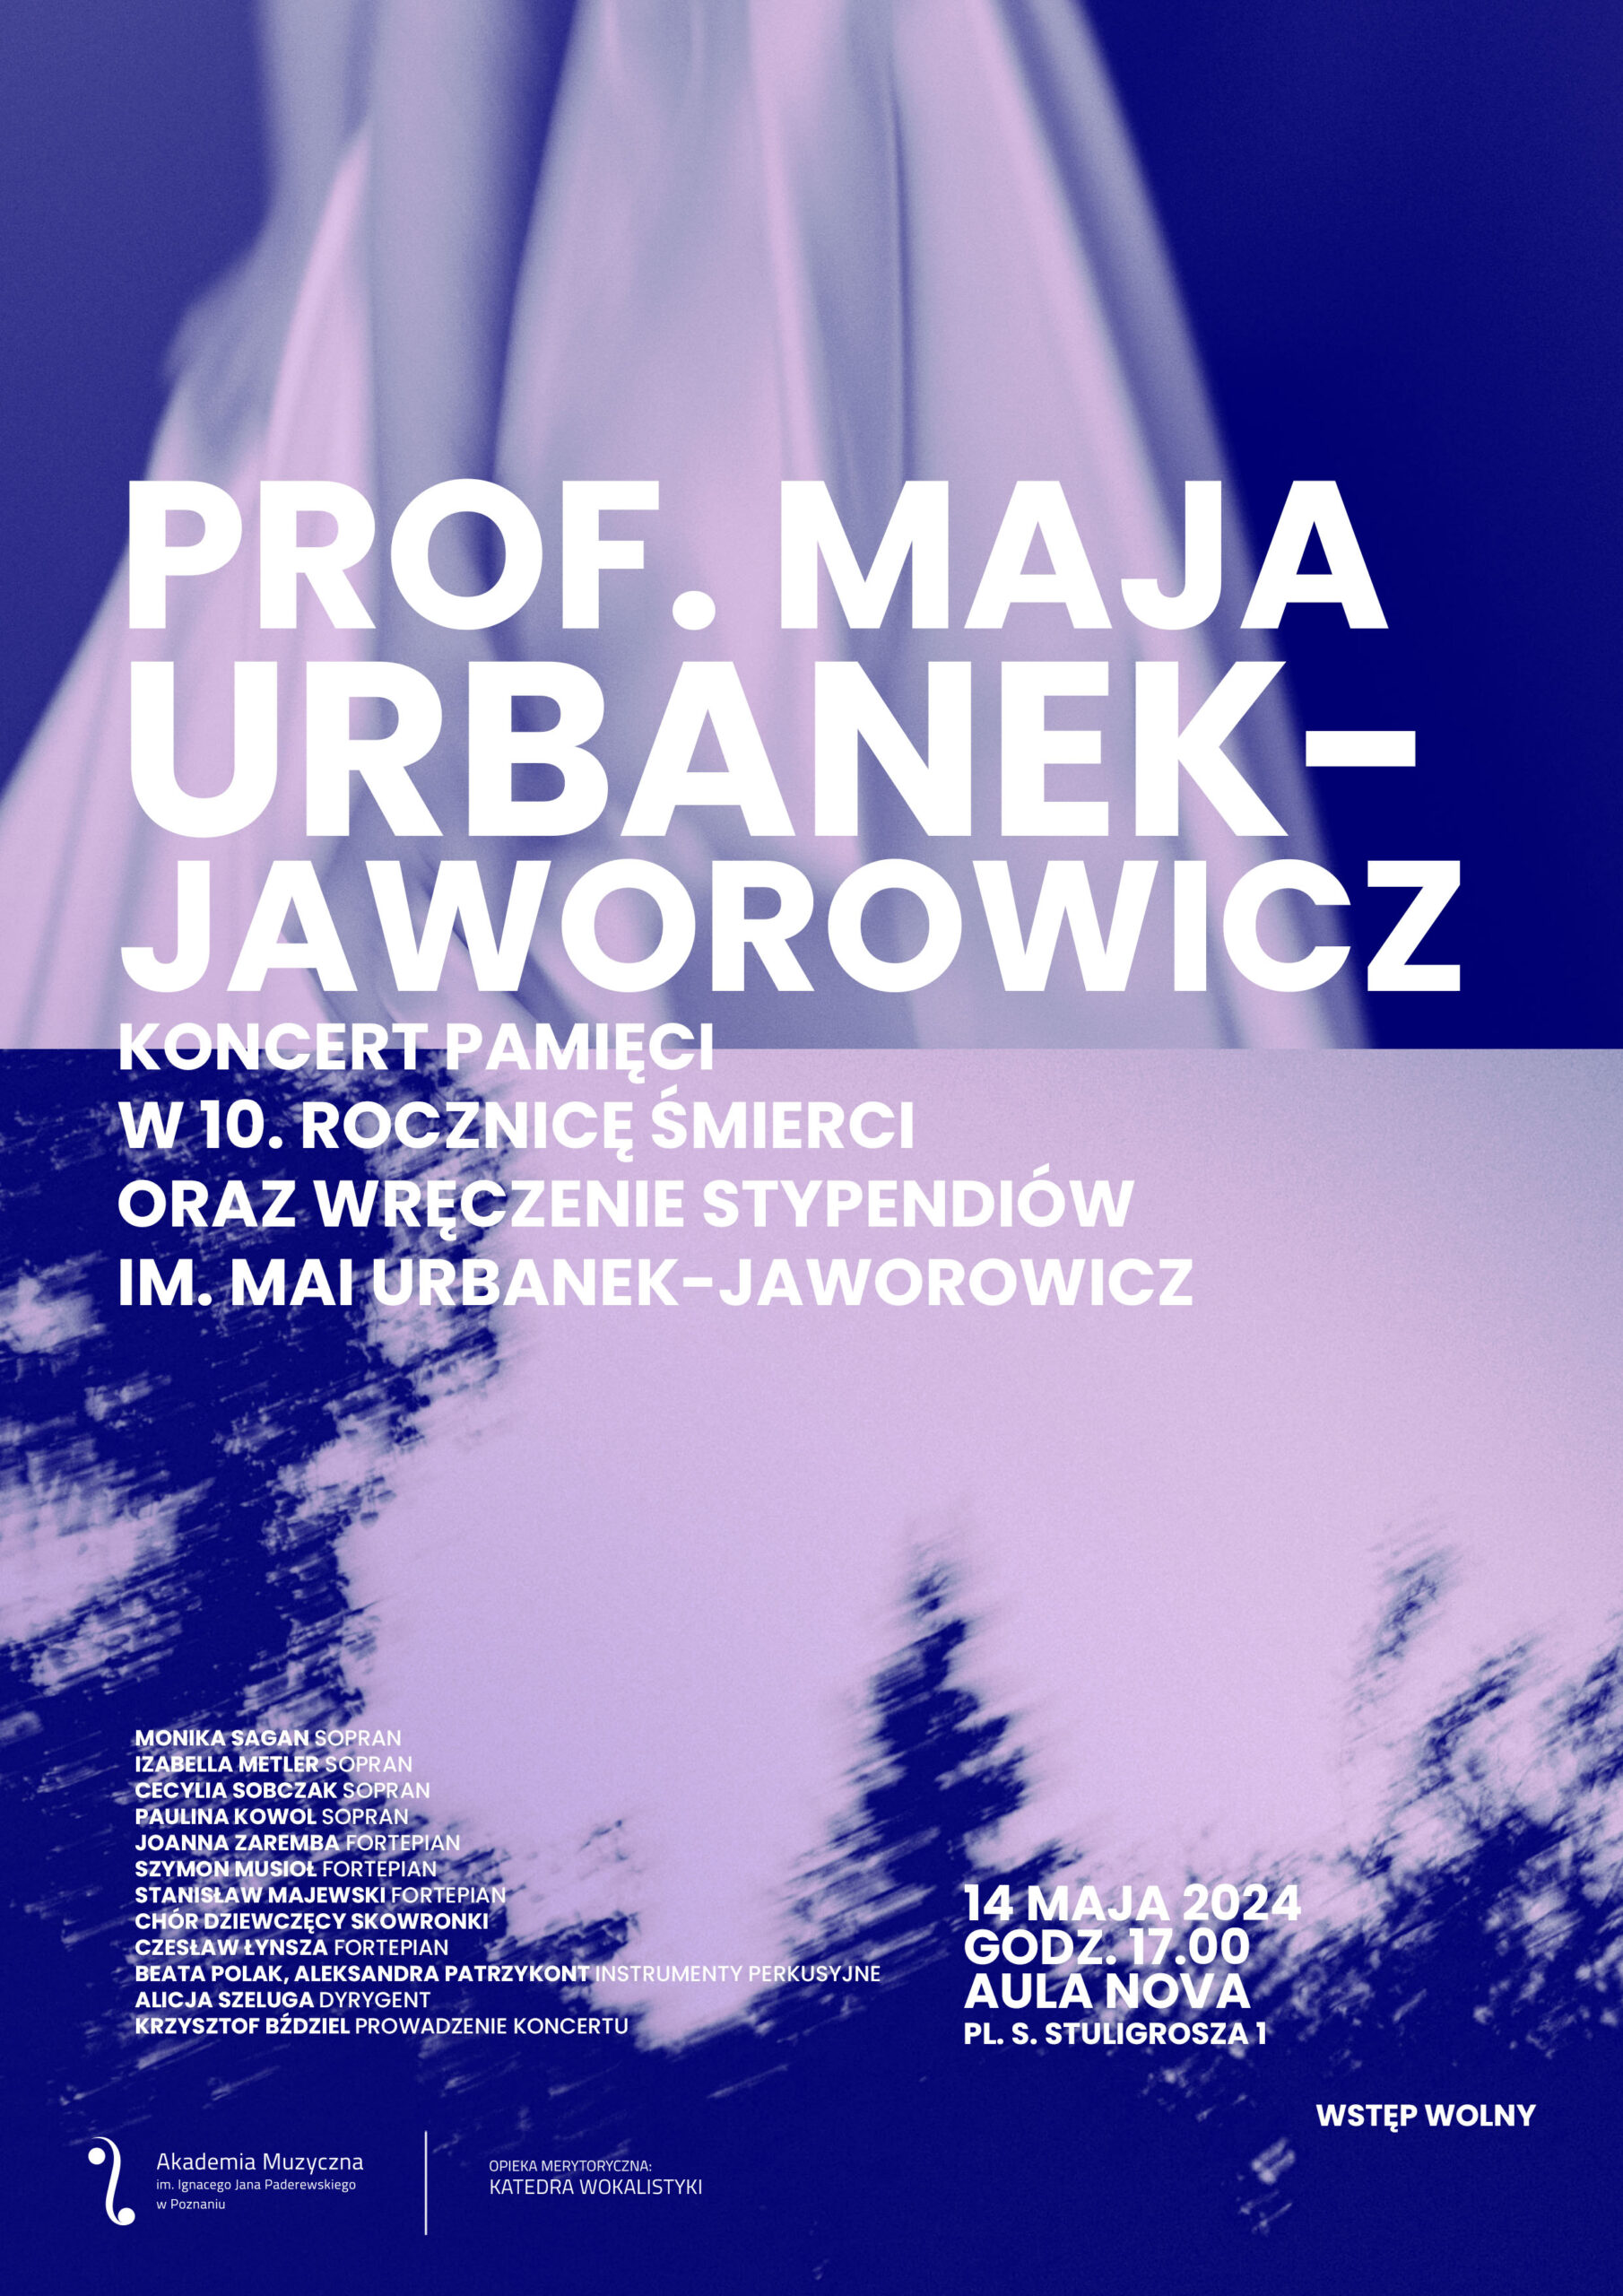 Afisz zawiera informacje na temat koncertu poświęconego Mai Urbanek-Jaworowicz w 10. rocznicę śmierci